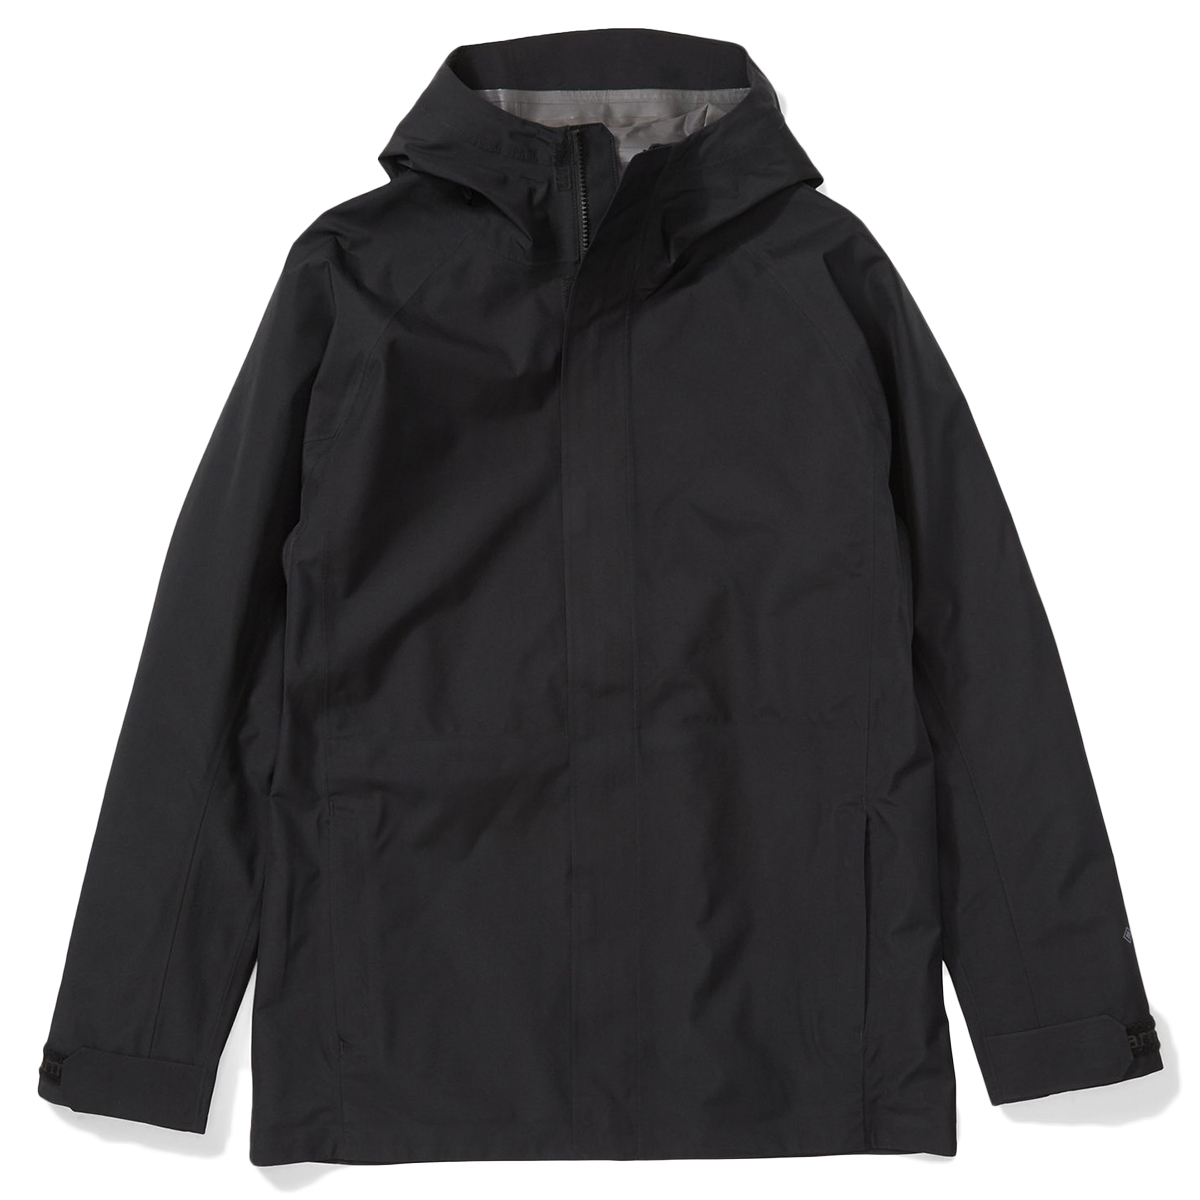 Marmot Men's Prescott Jacket - Black, XL